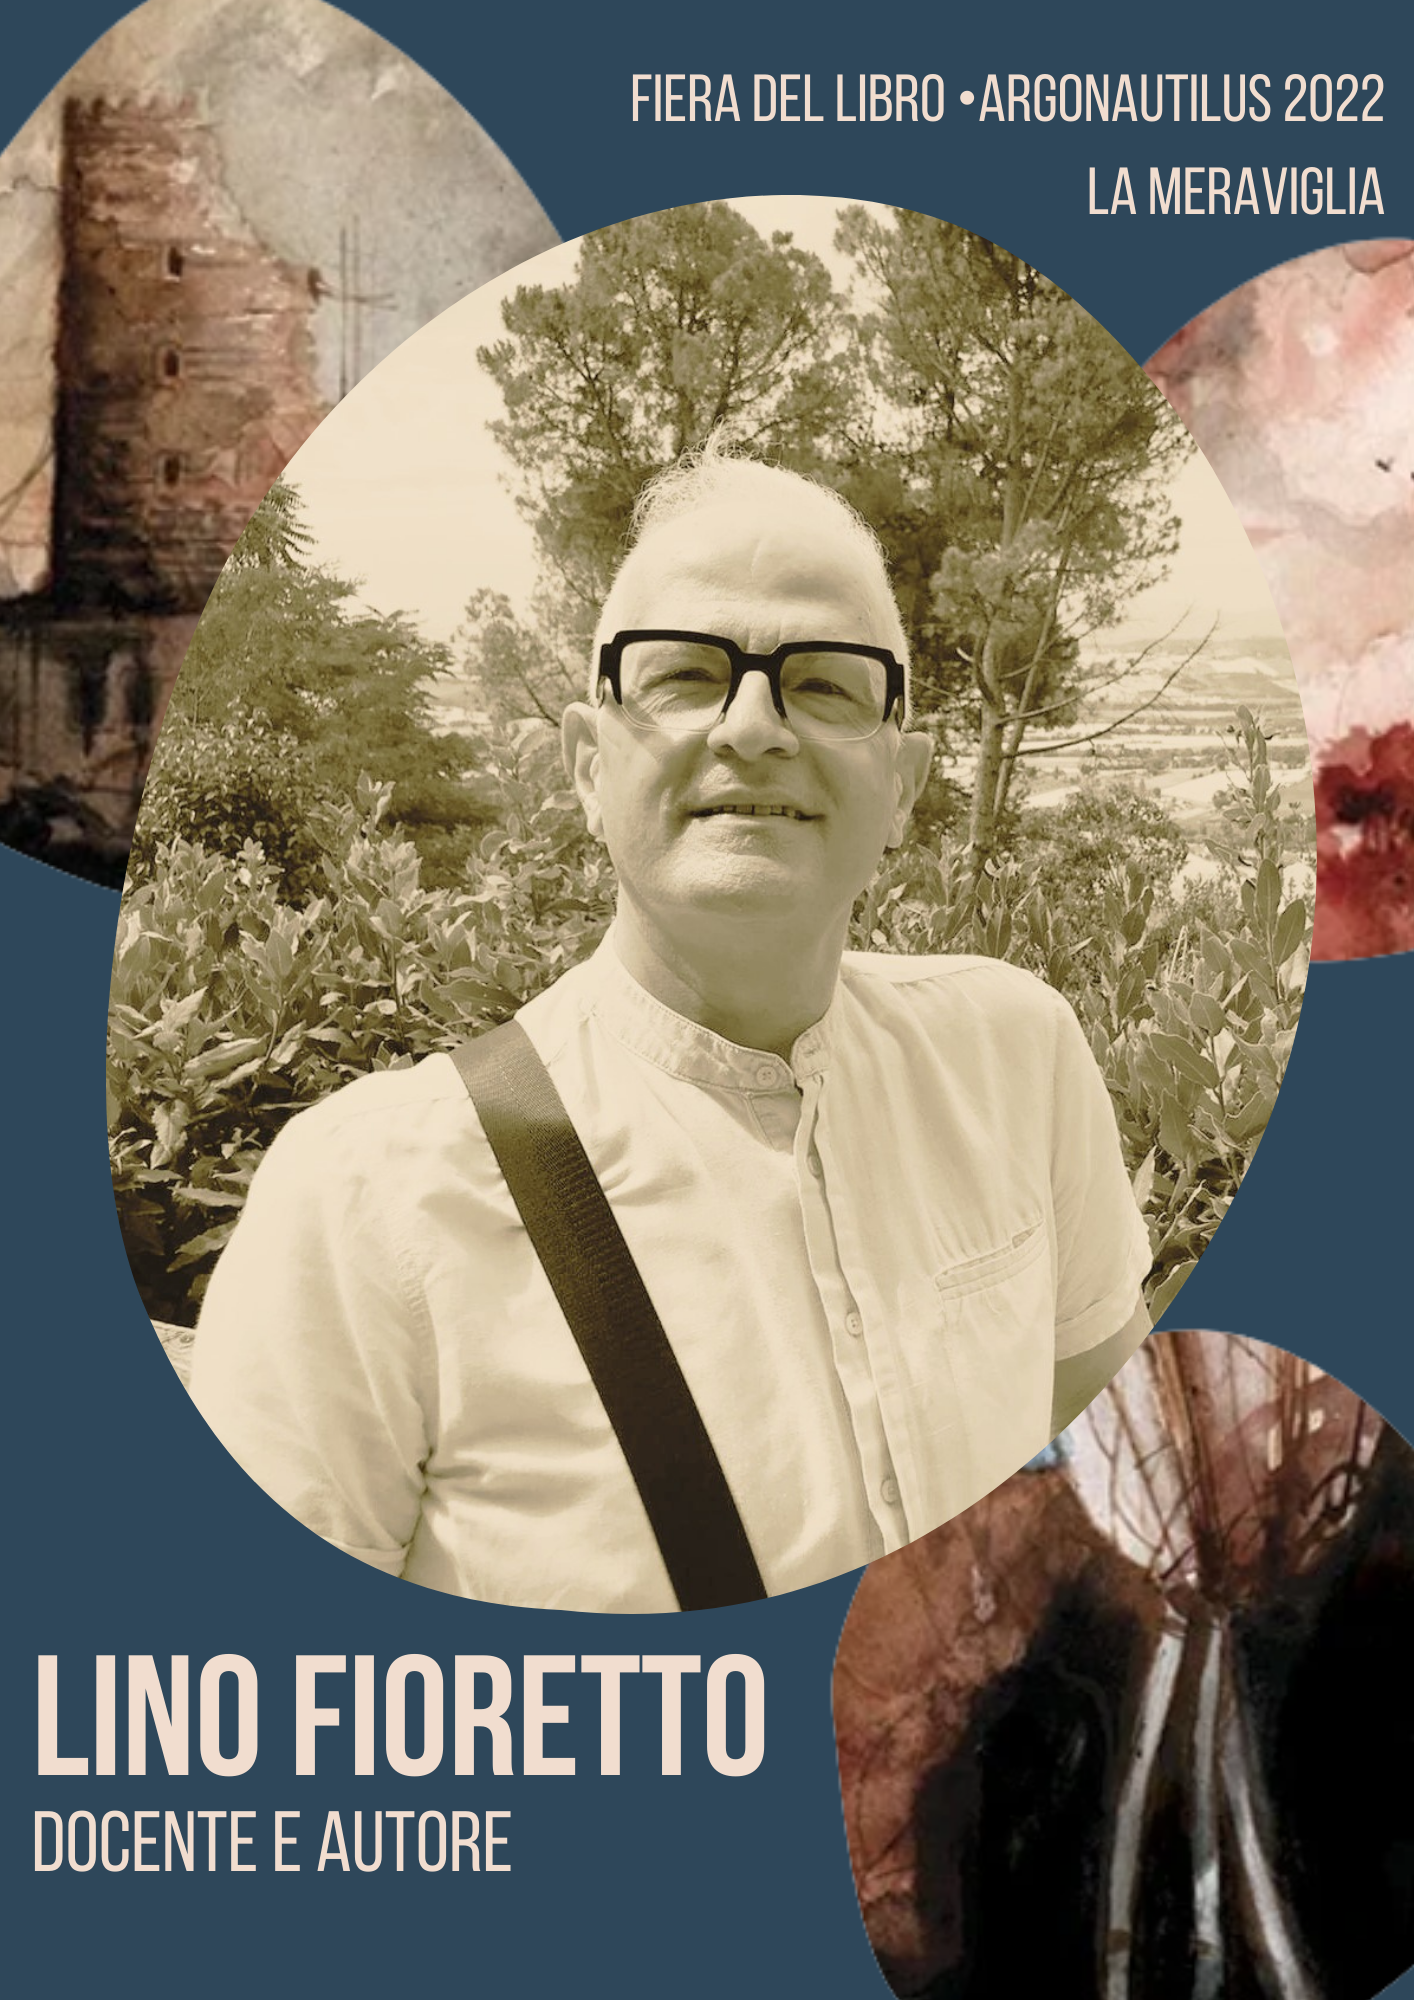 Lino Fioretto